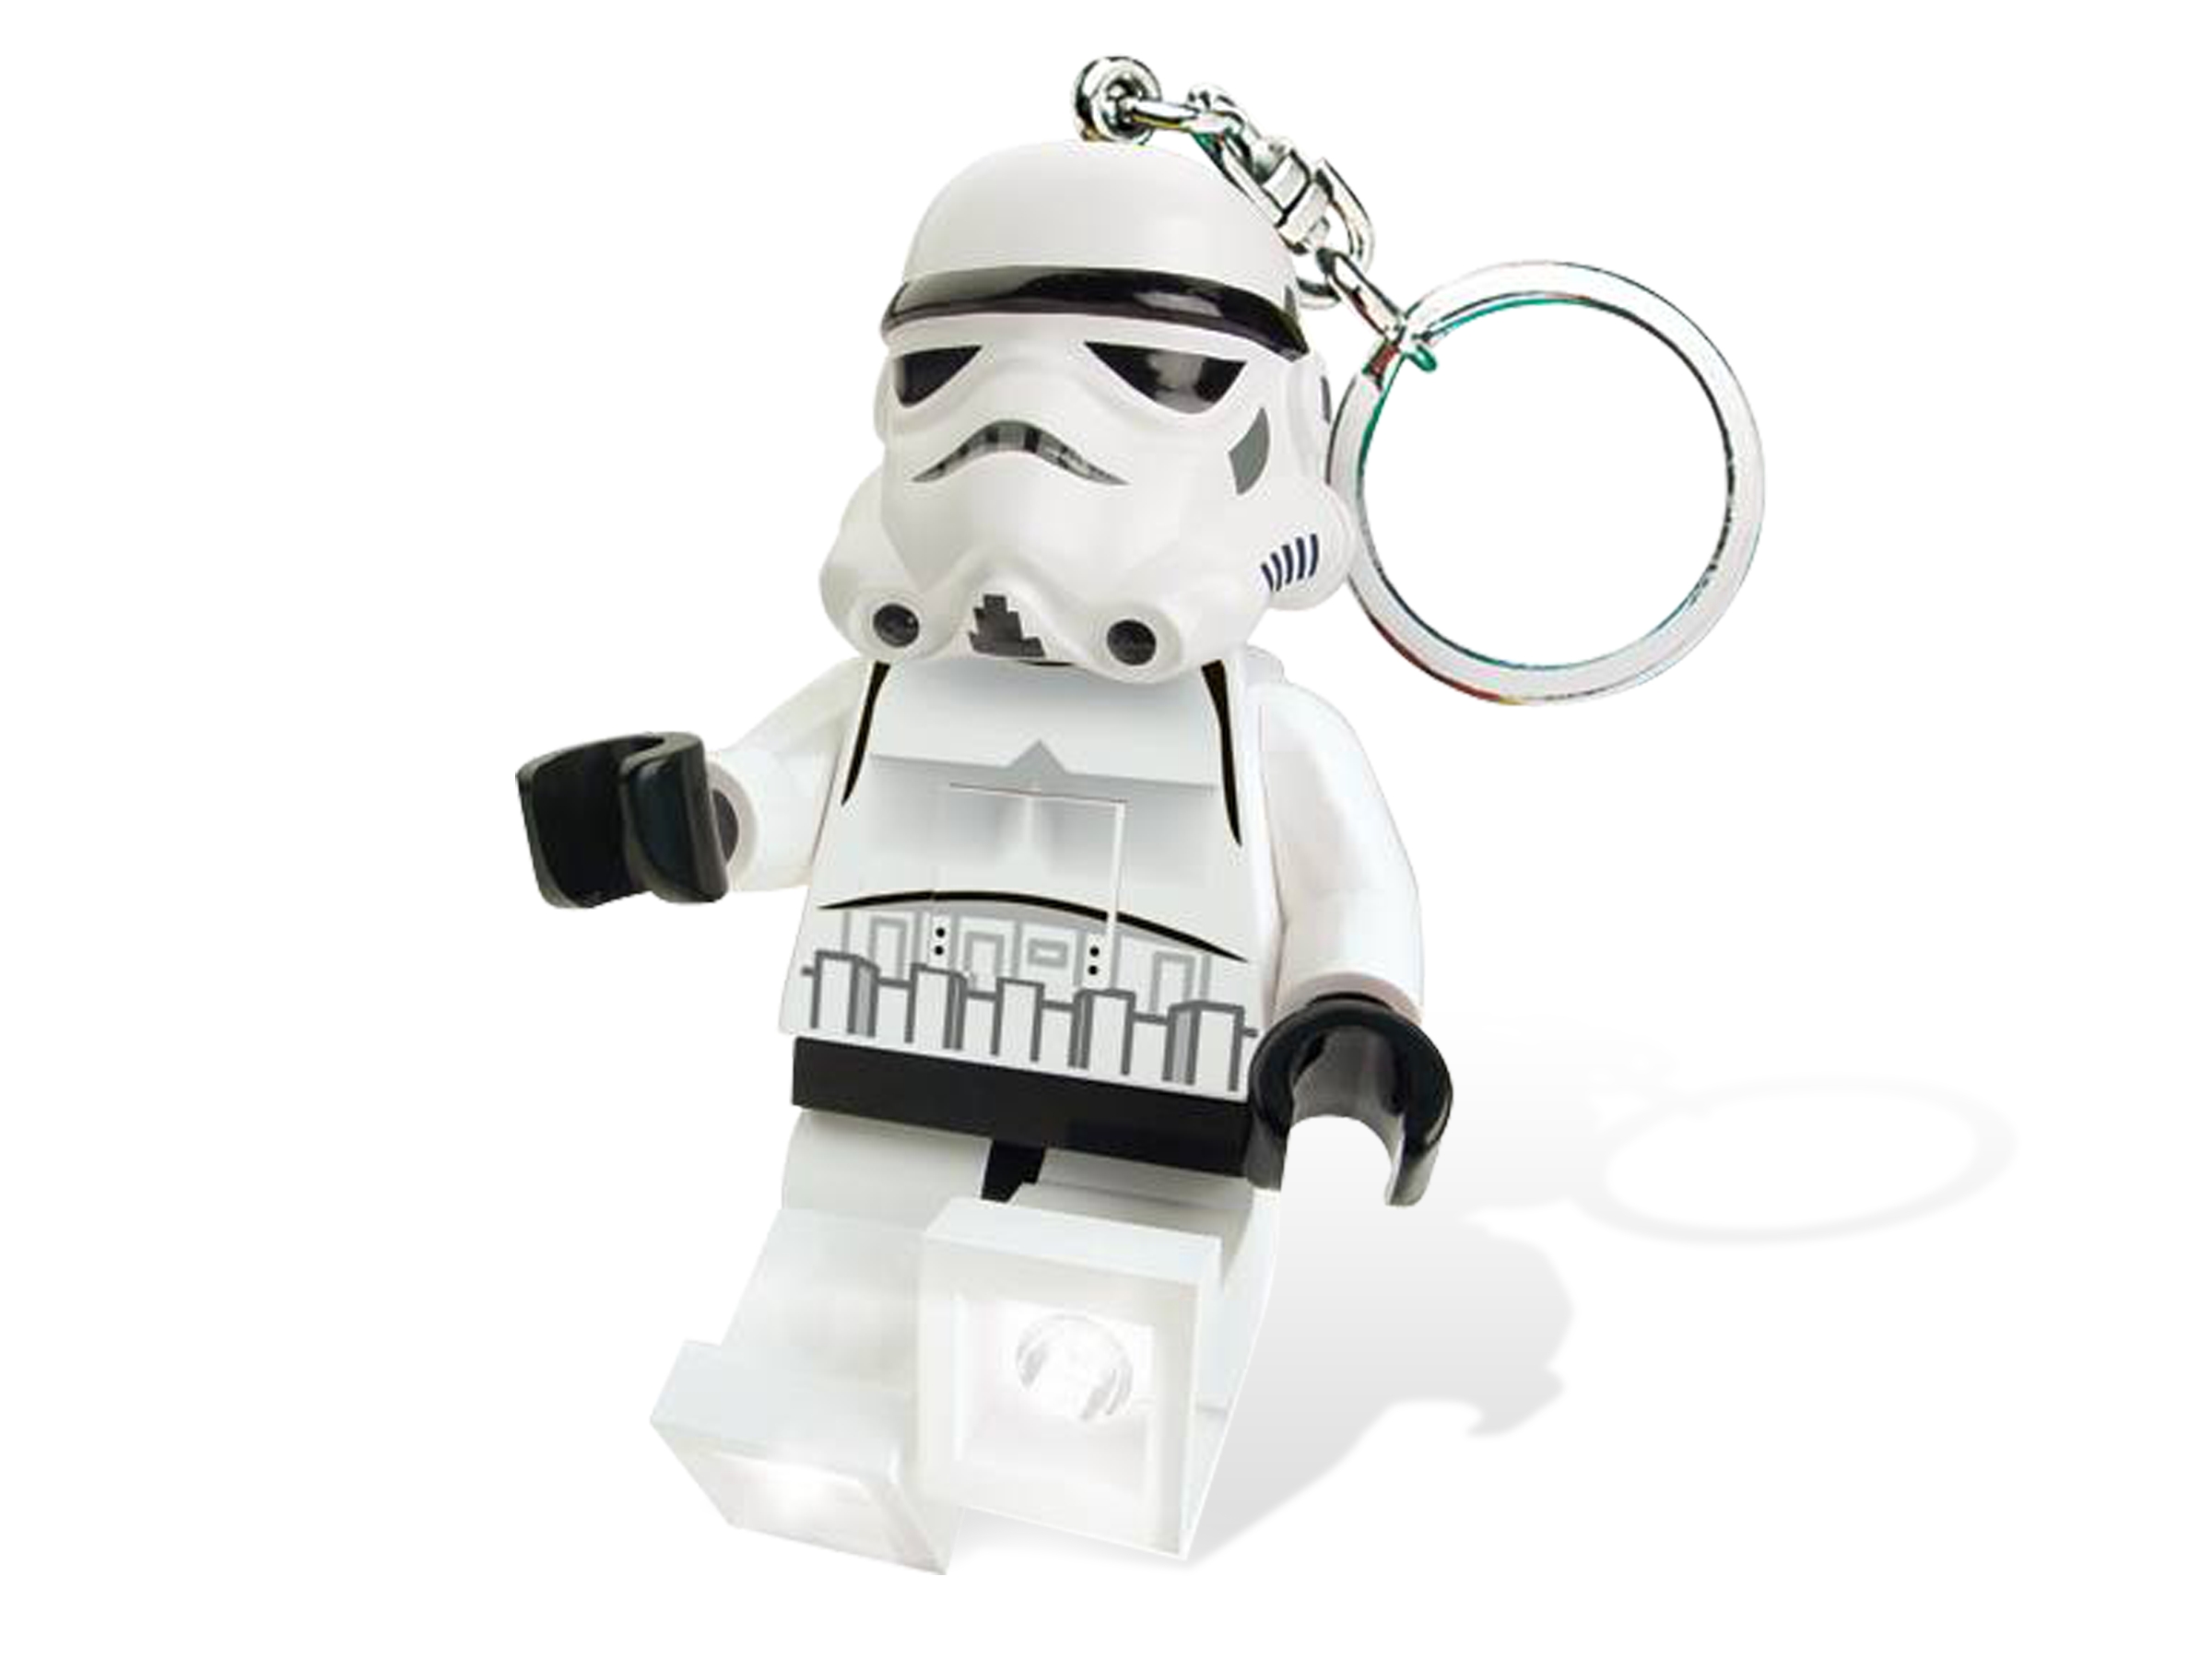 Lego Star Wars LEDLITE Light LED Keychain Strap Princess Leia UK for sale online 